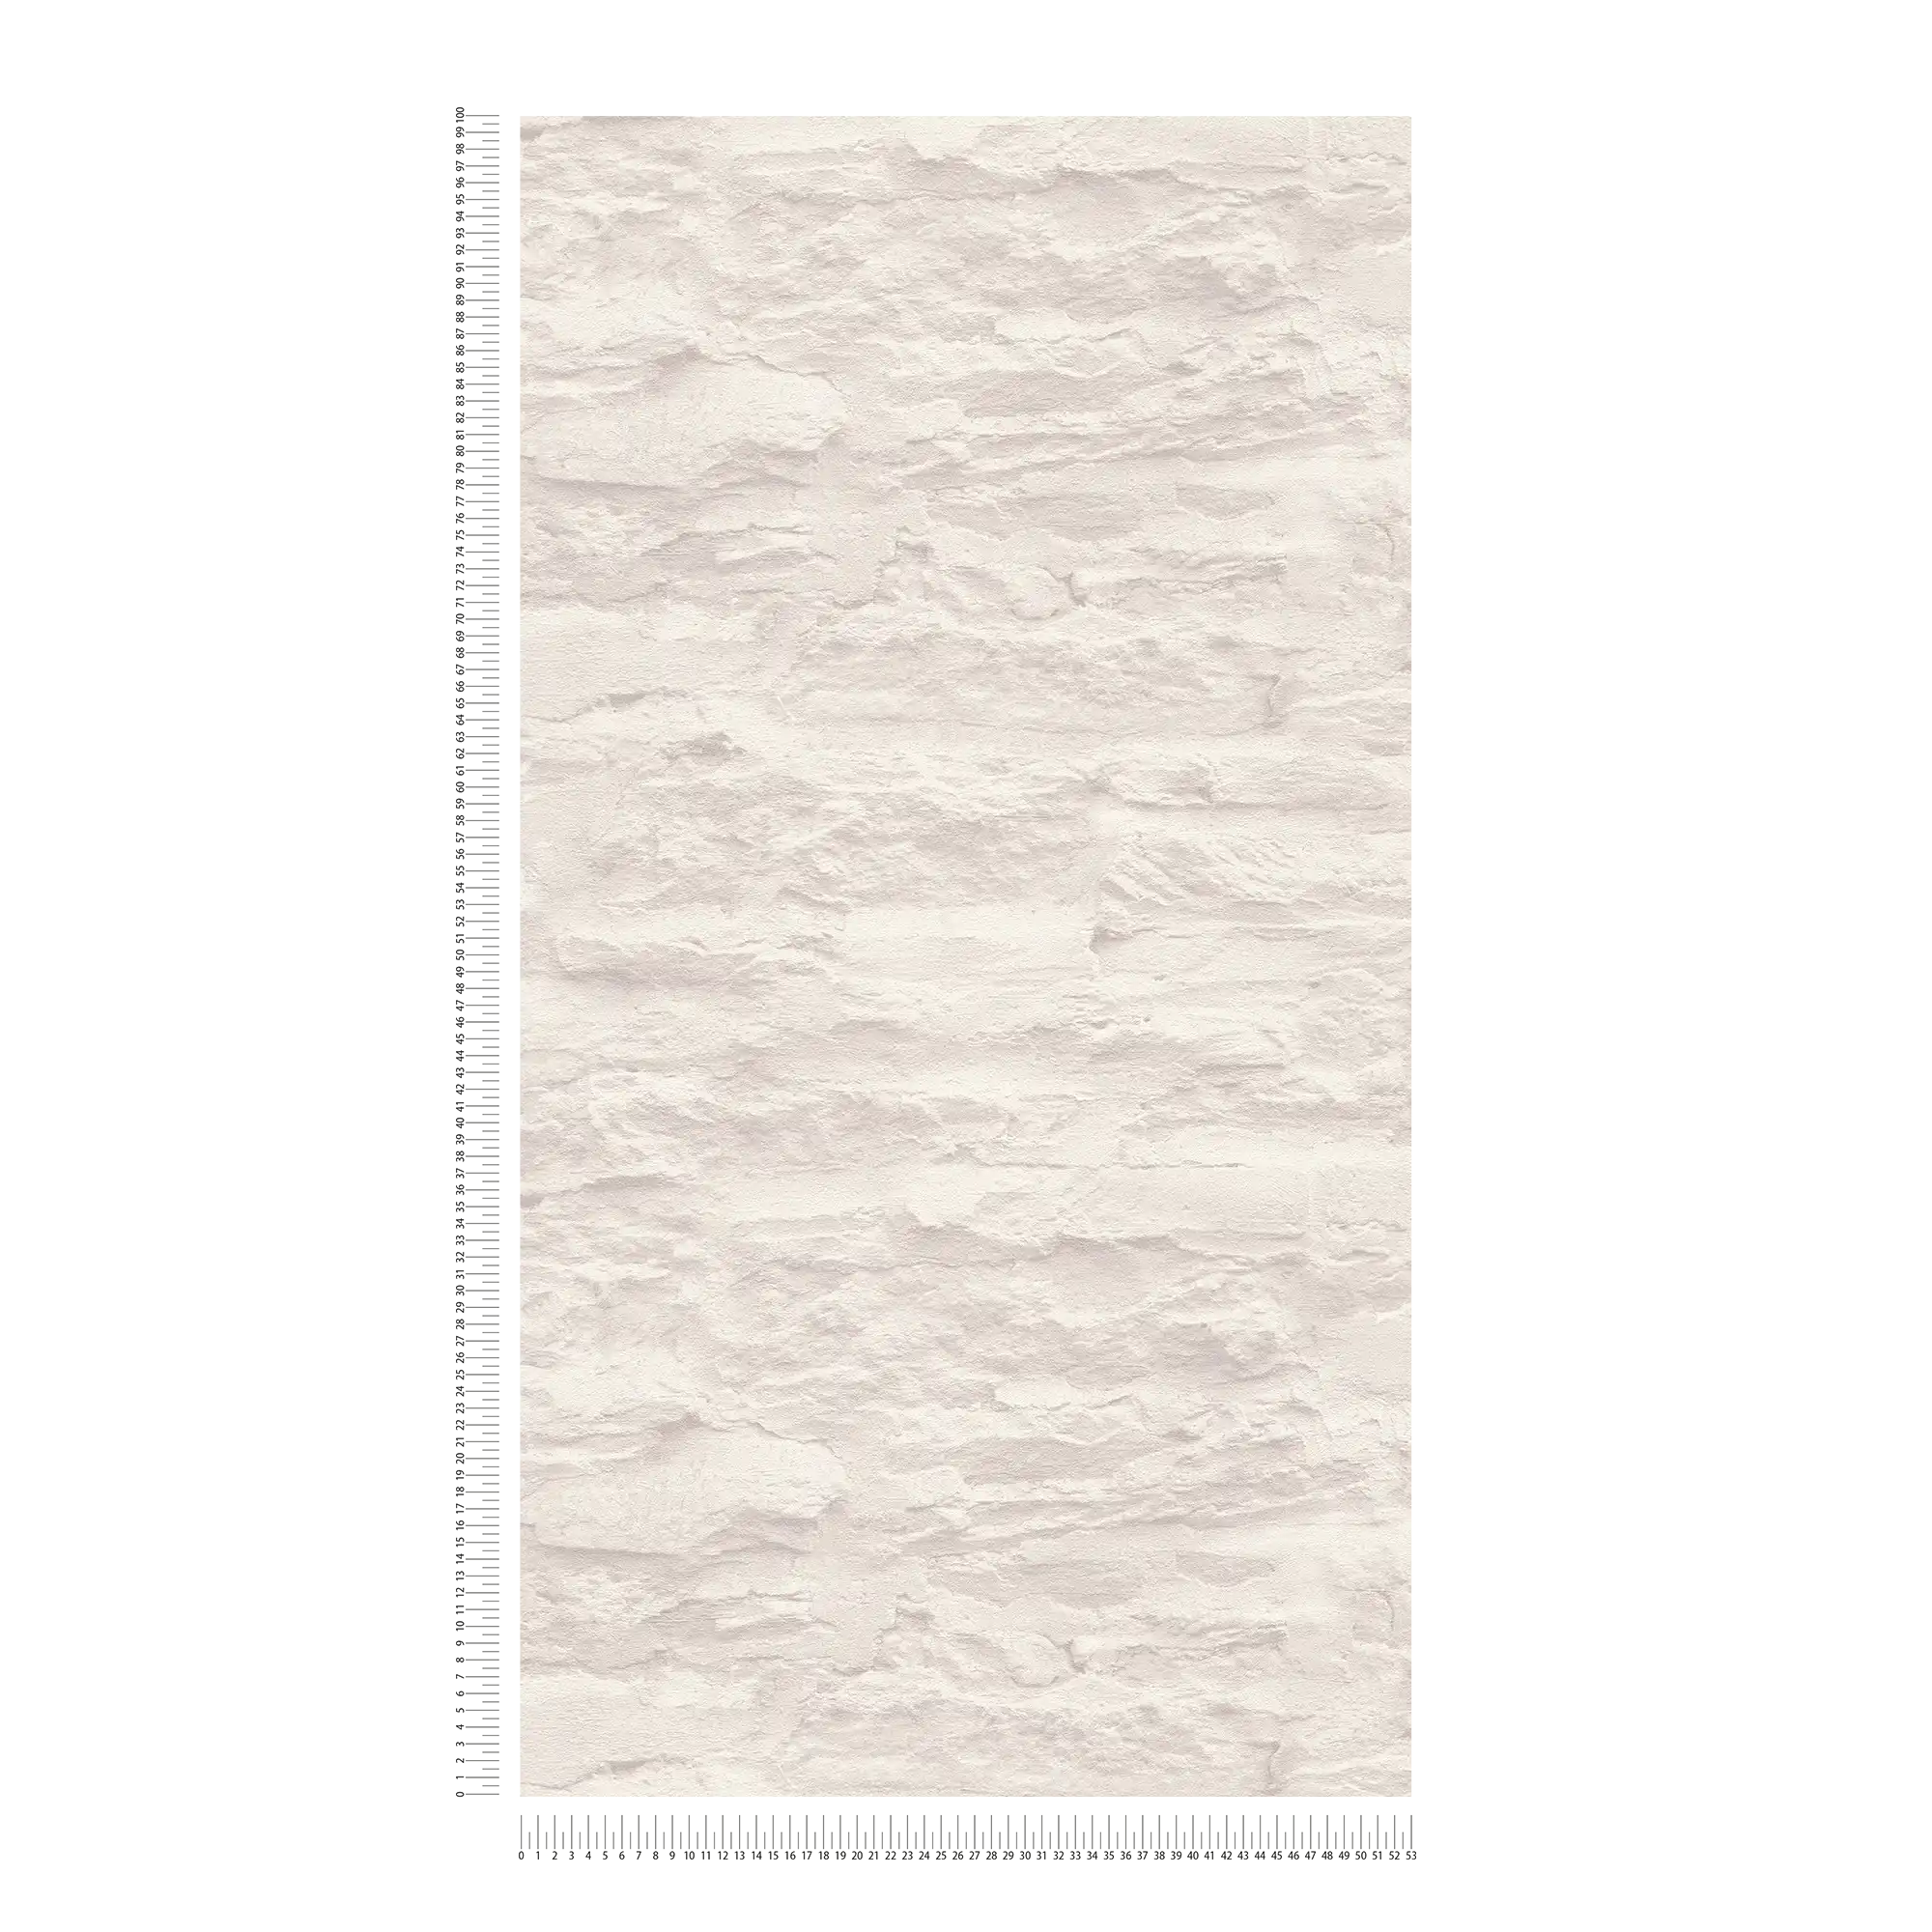             Papier peint intissé clair imitation mur avec pierres naturelles & crépi - crème, blanc
        